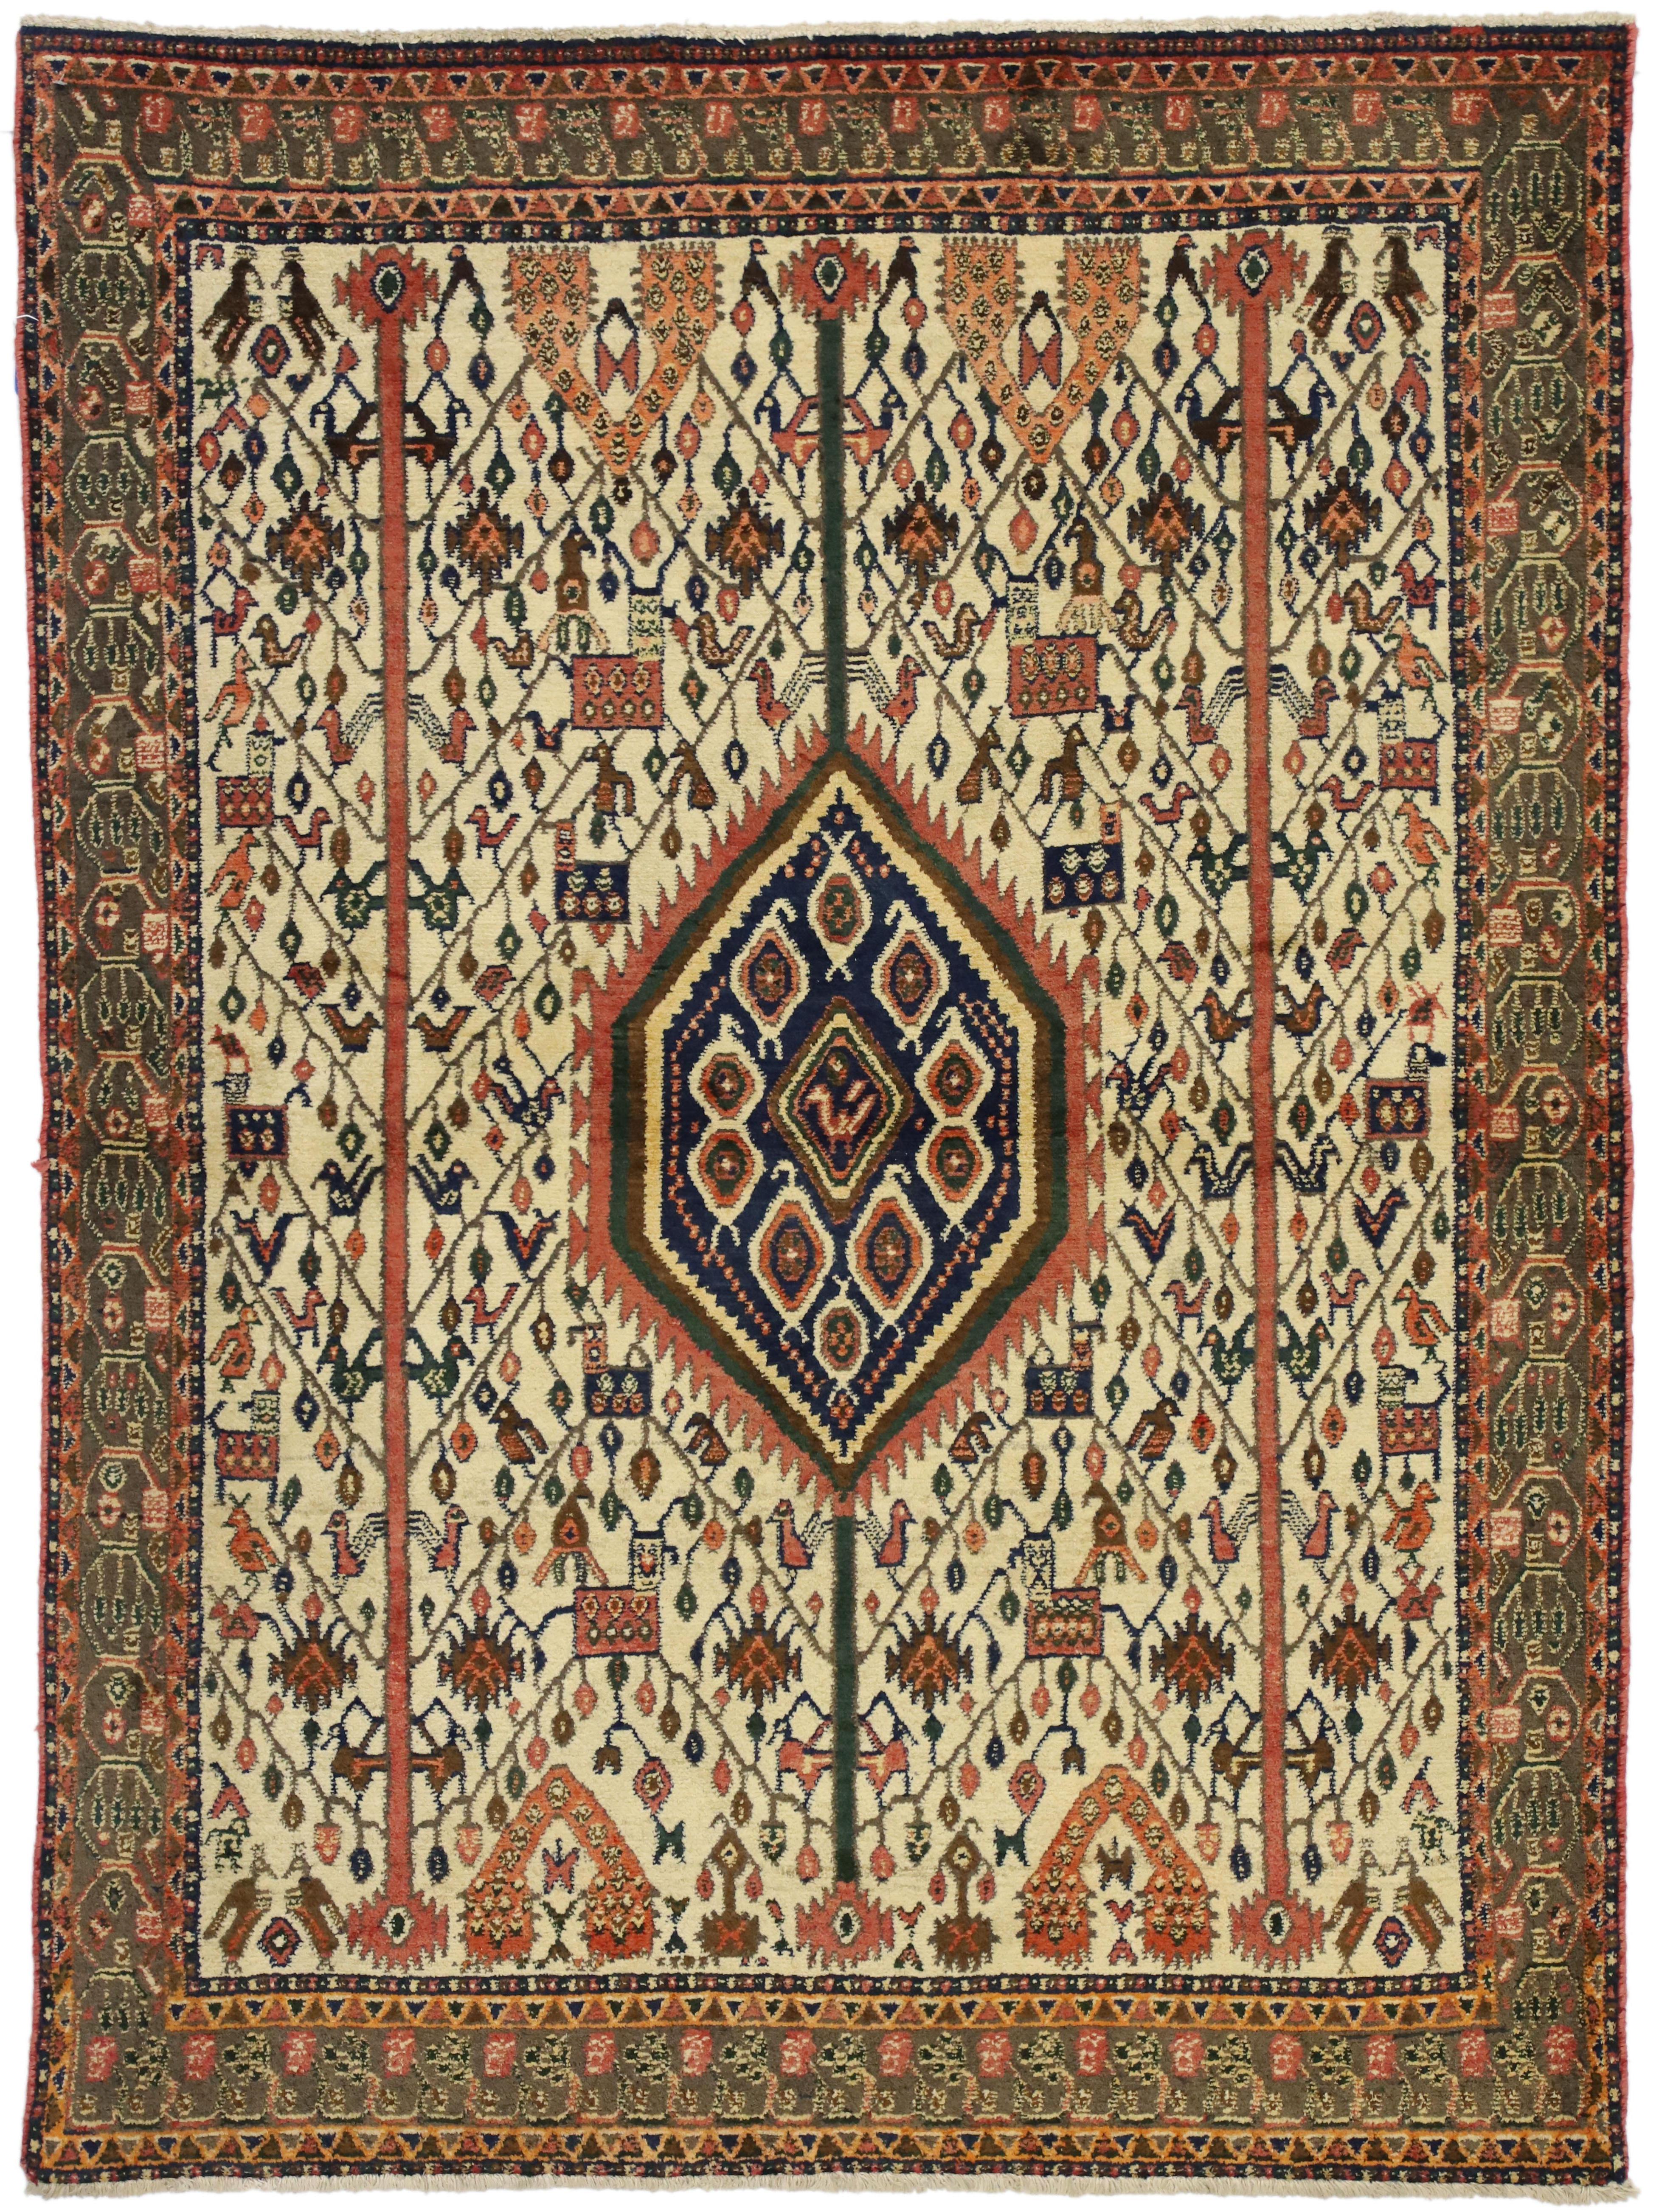 75232 tapis d'accent vintage persan Afshar avec arbre de vie et style tribal nomade. Ce tapis d'accent Persan vintage Afshar en laine nouée à la main présente un magnifique motif d'oiseau et d'arbre de vie dans un style tribal nomade. Le tapis